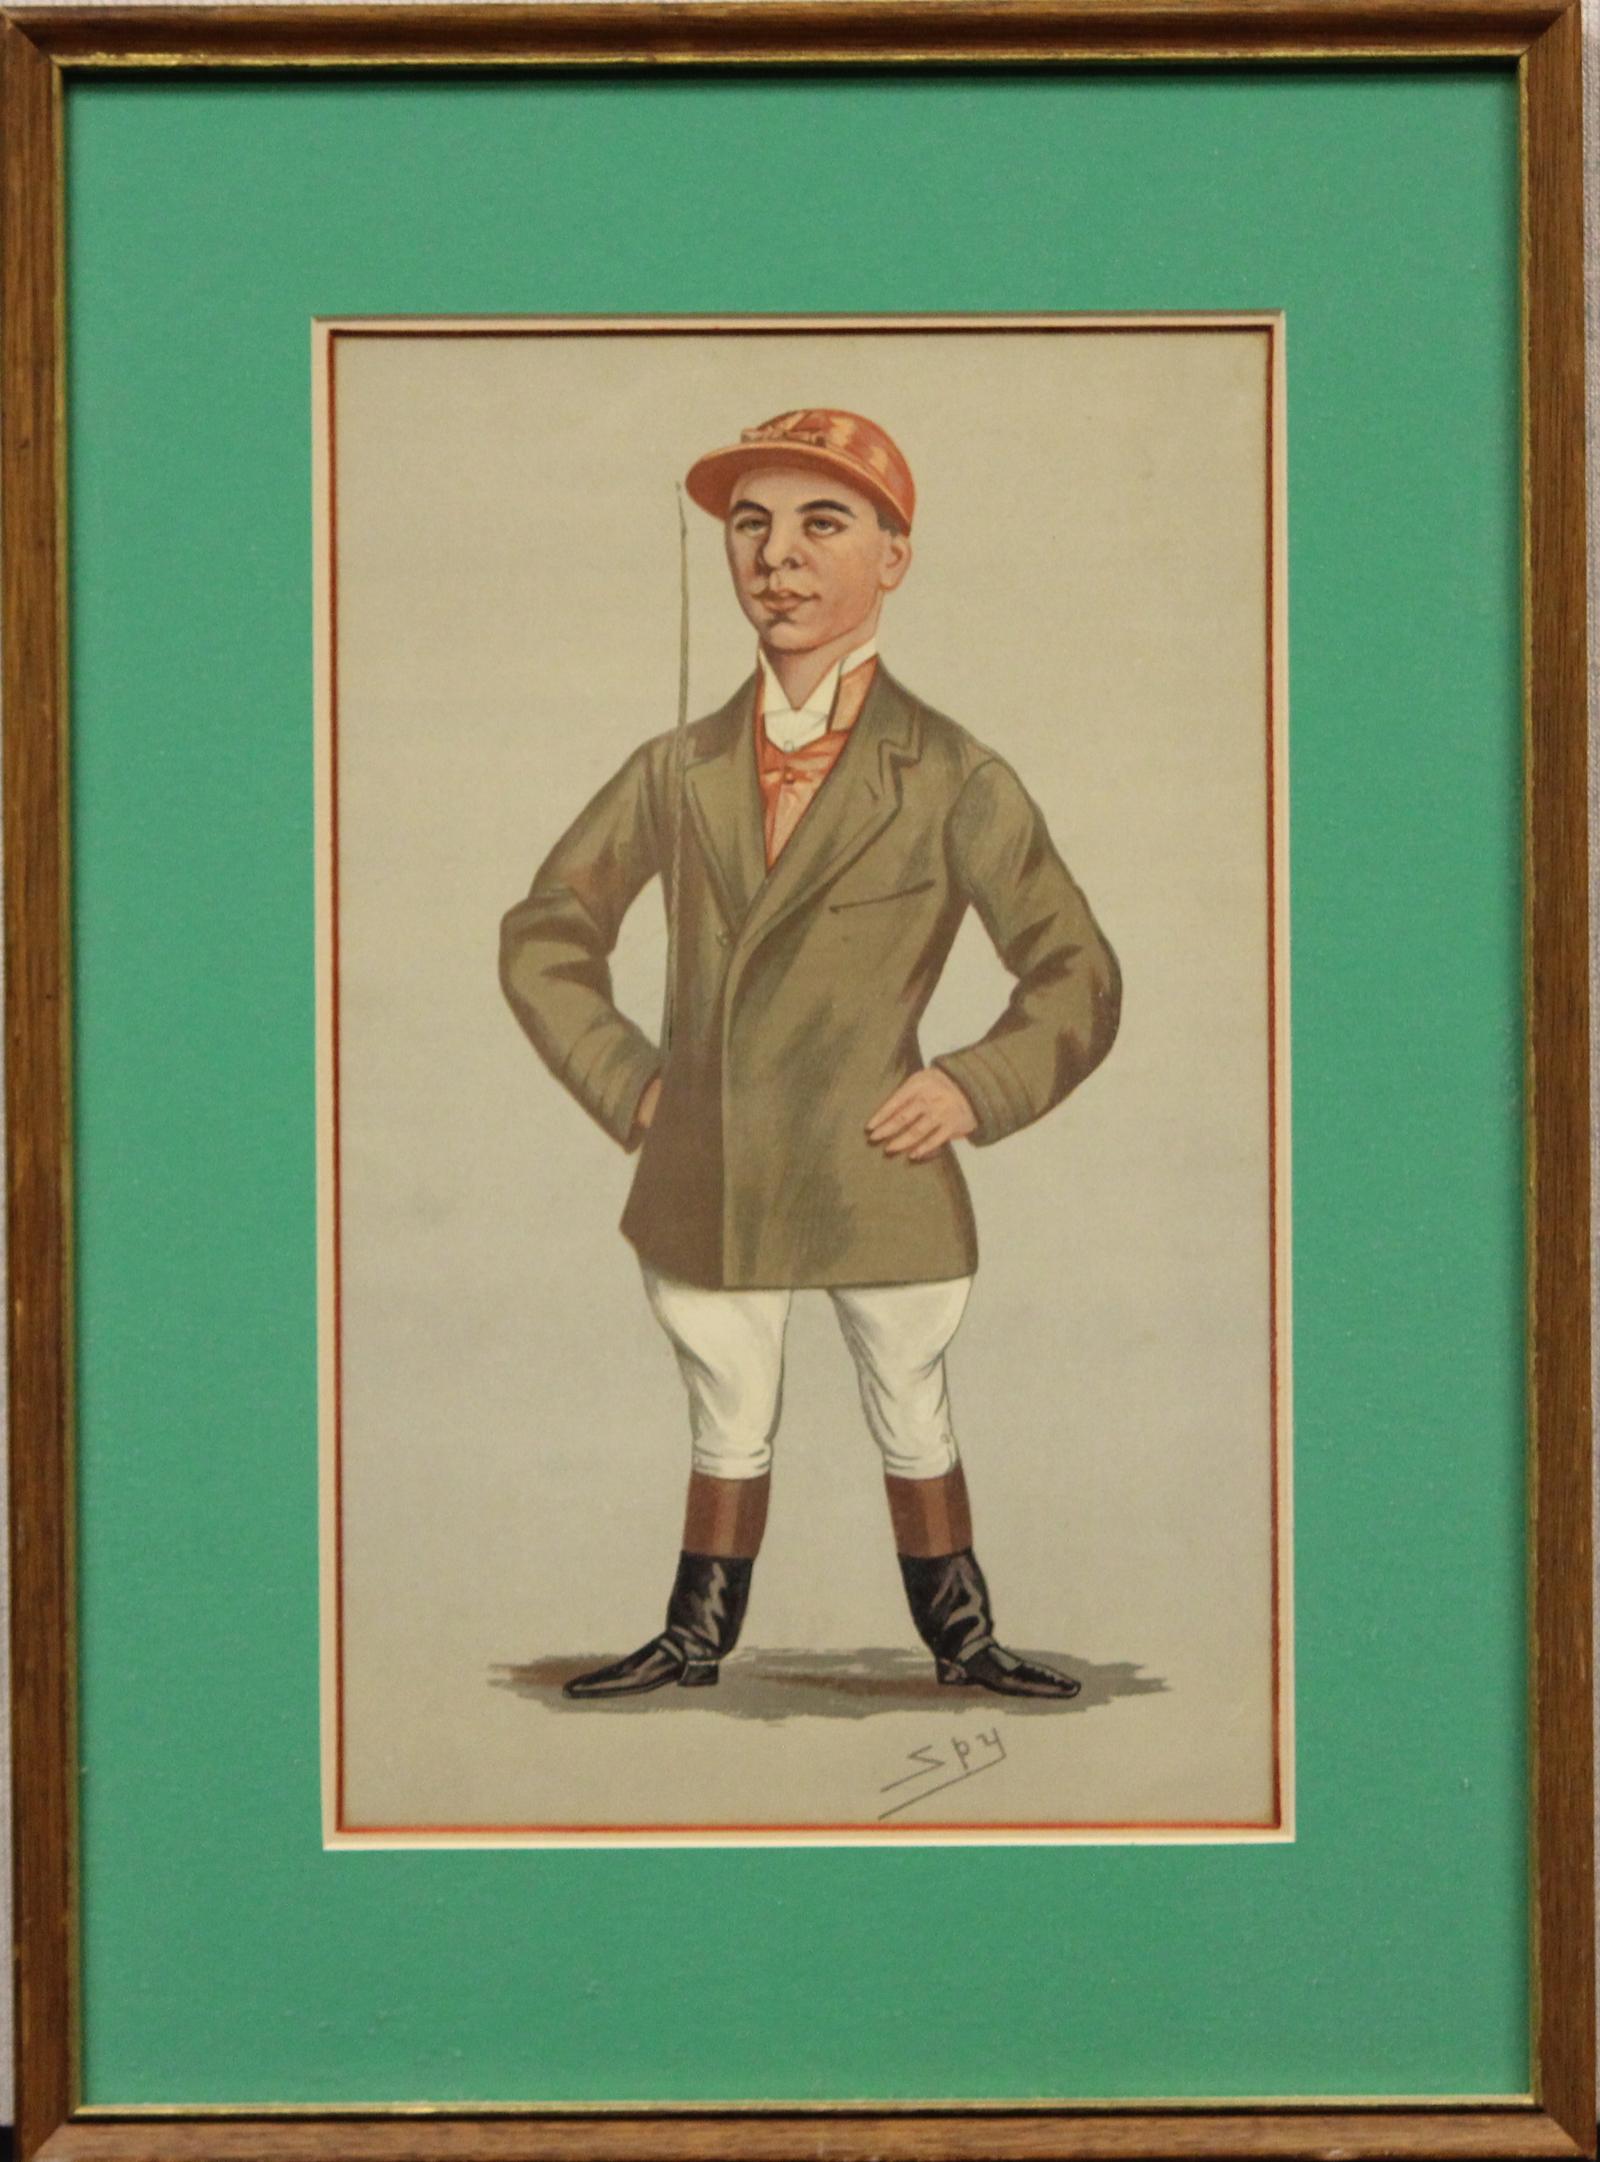 Classic Vanity Fair 19thC jockey portrait by 'Spy' aka Sir Leslie Ward

Image Sz: 11 1/2"H x 7 1/4"W

Frame Sz: 17"H x 13"W

w/ turf green mat